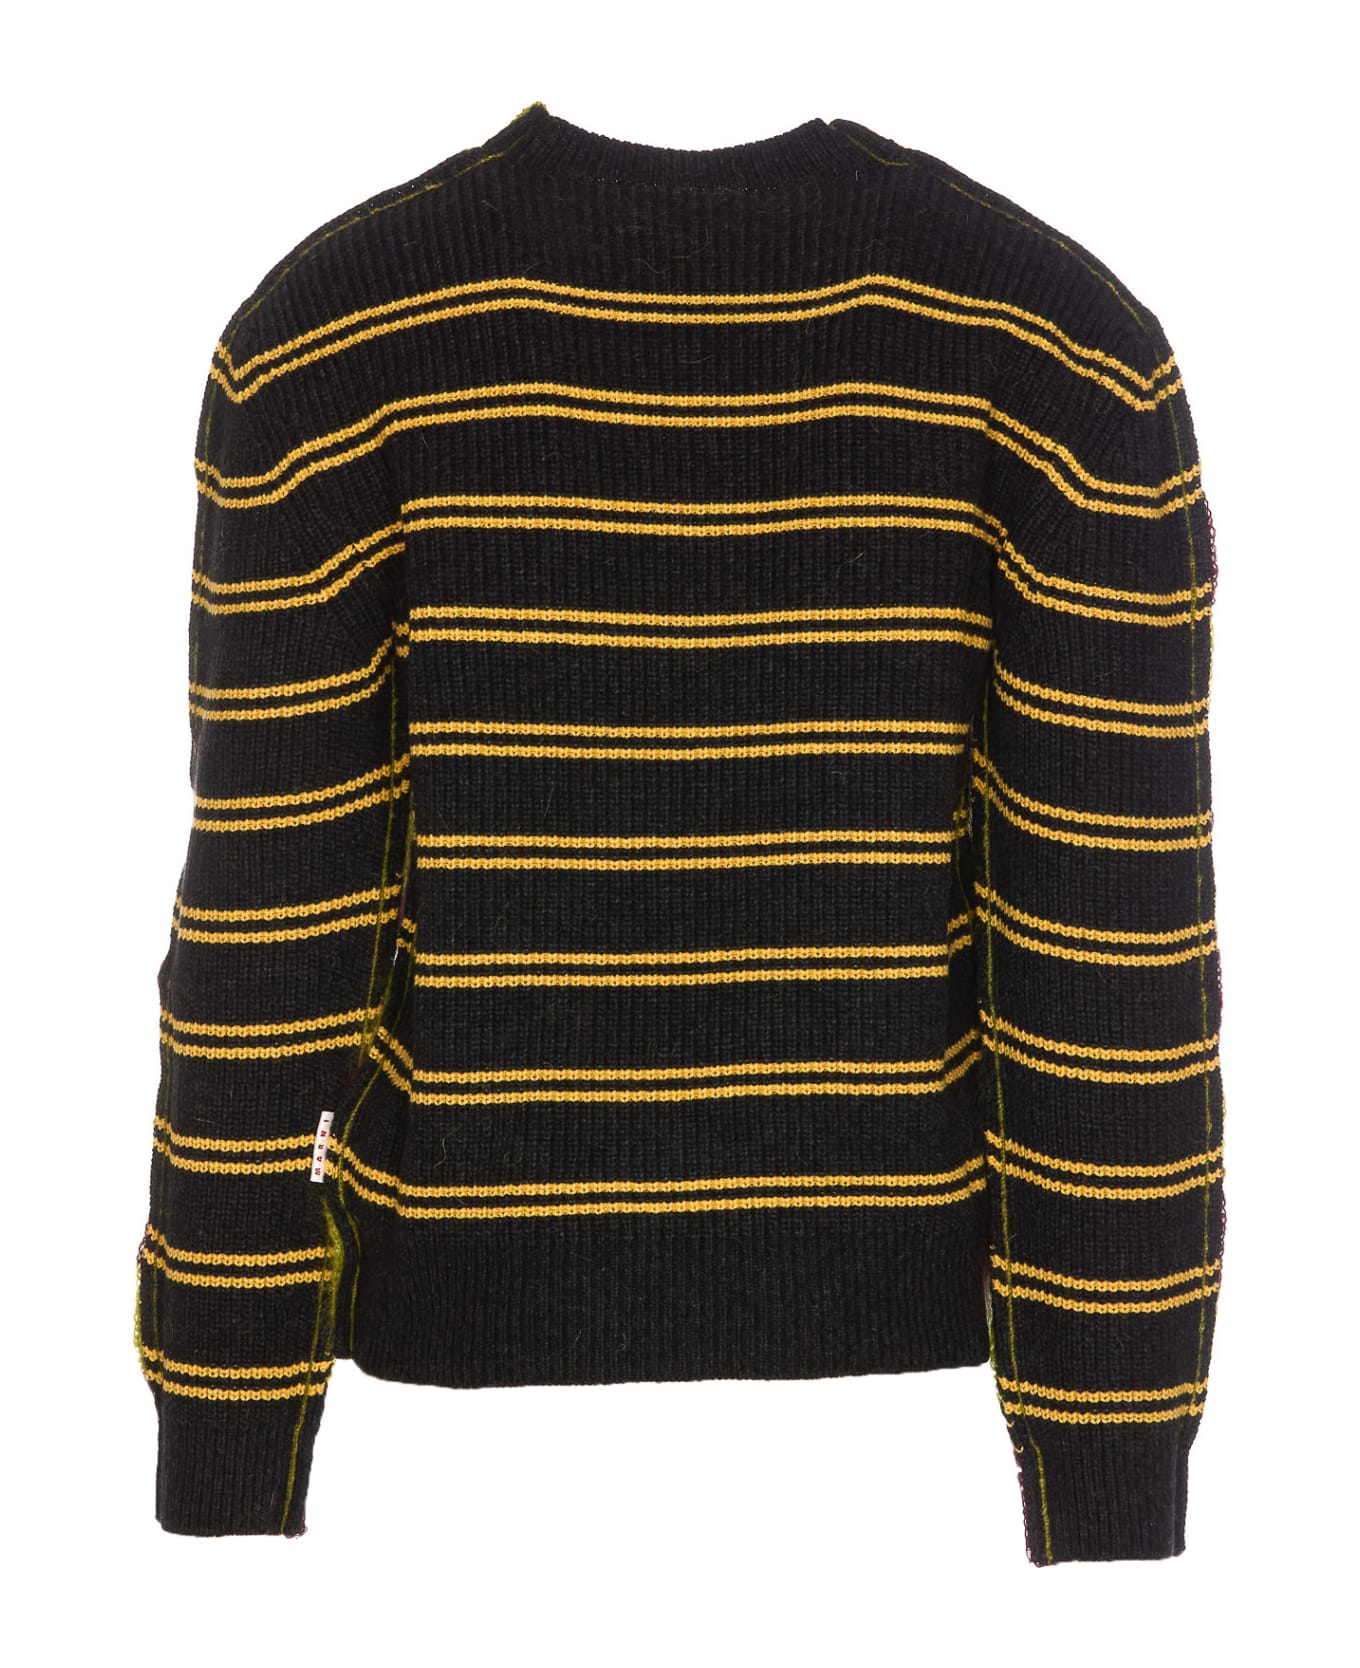 Marni Striped Sweater - Green